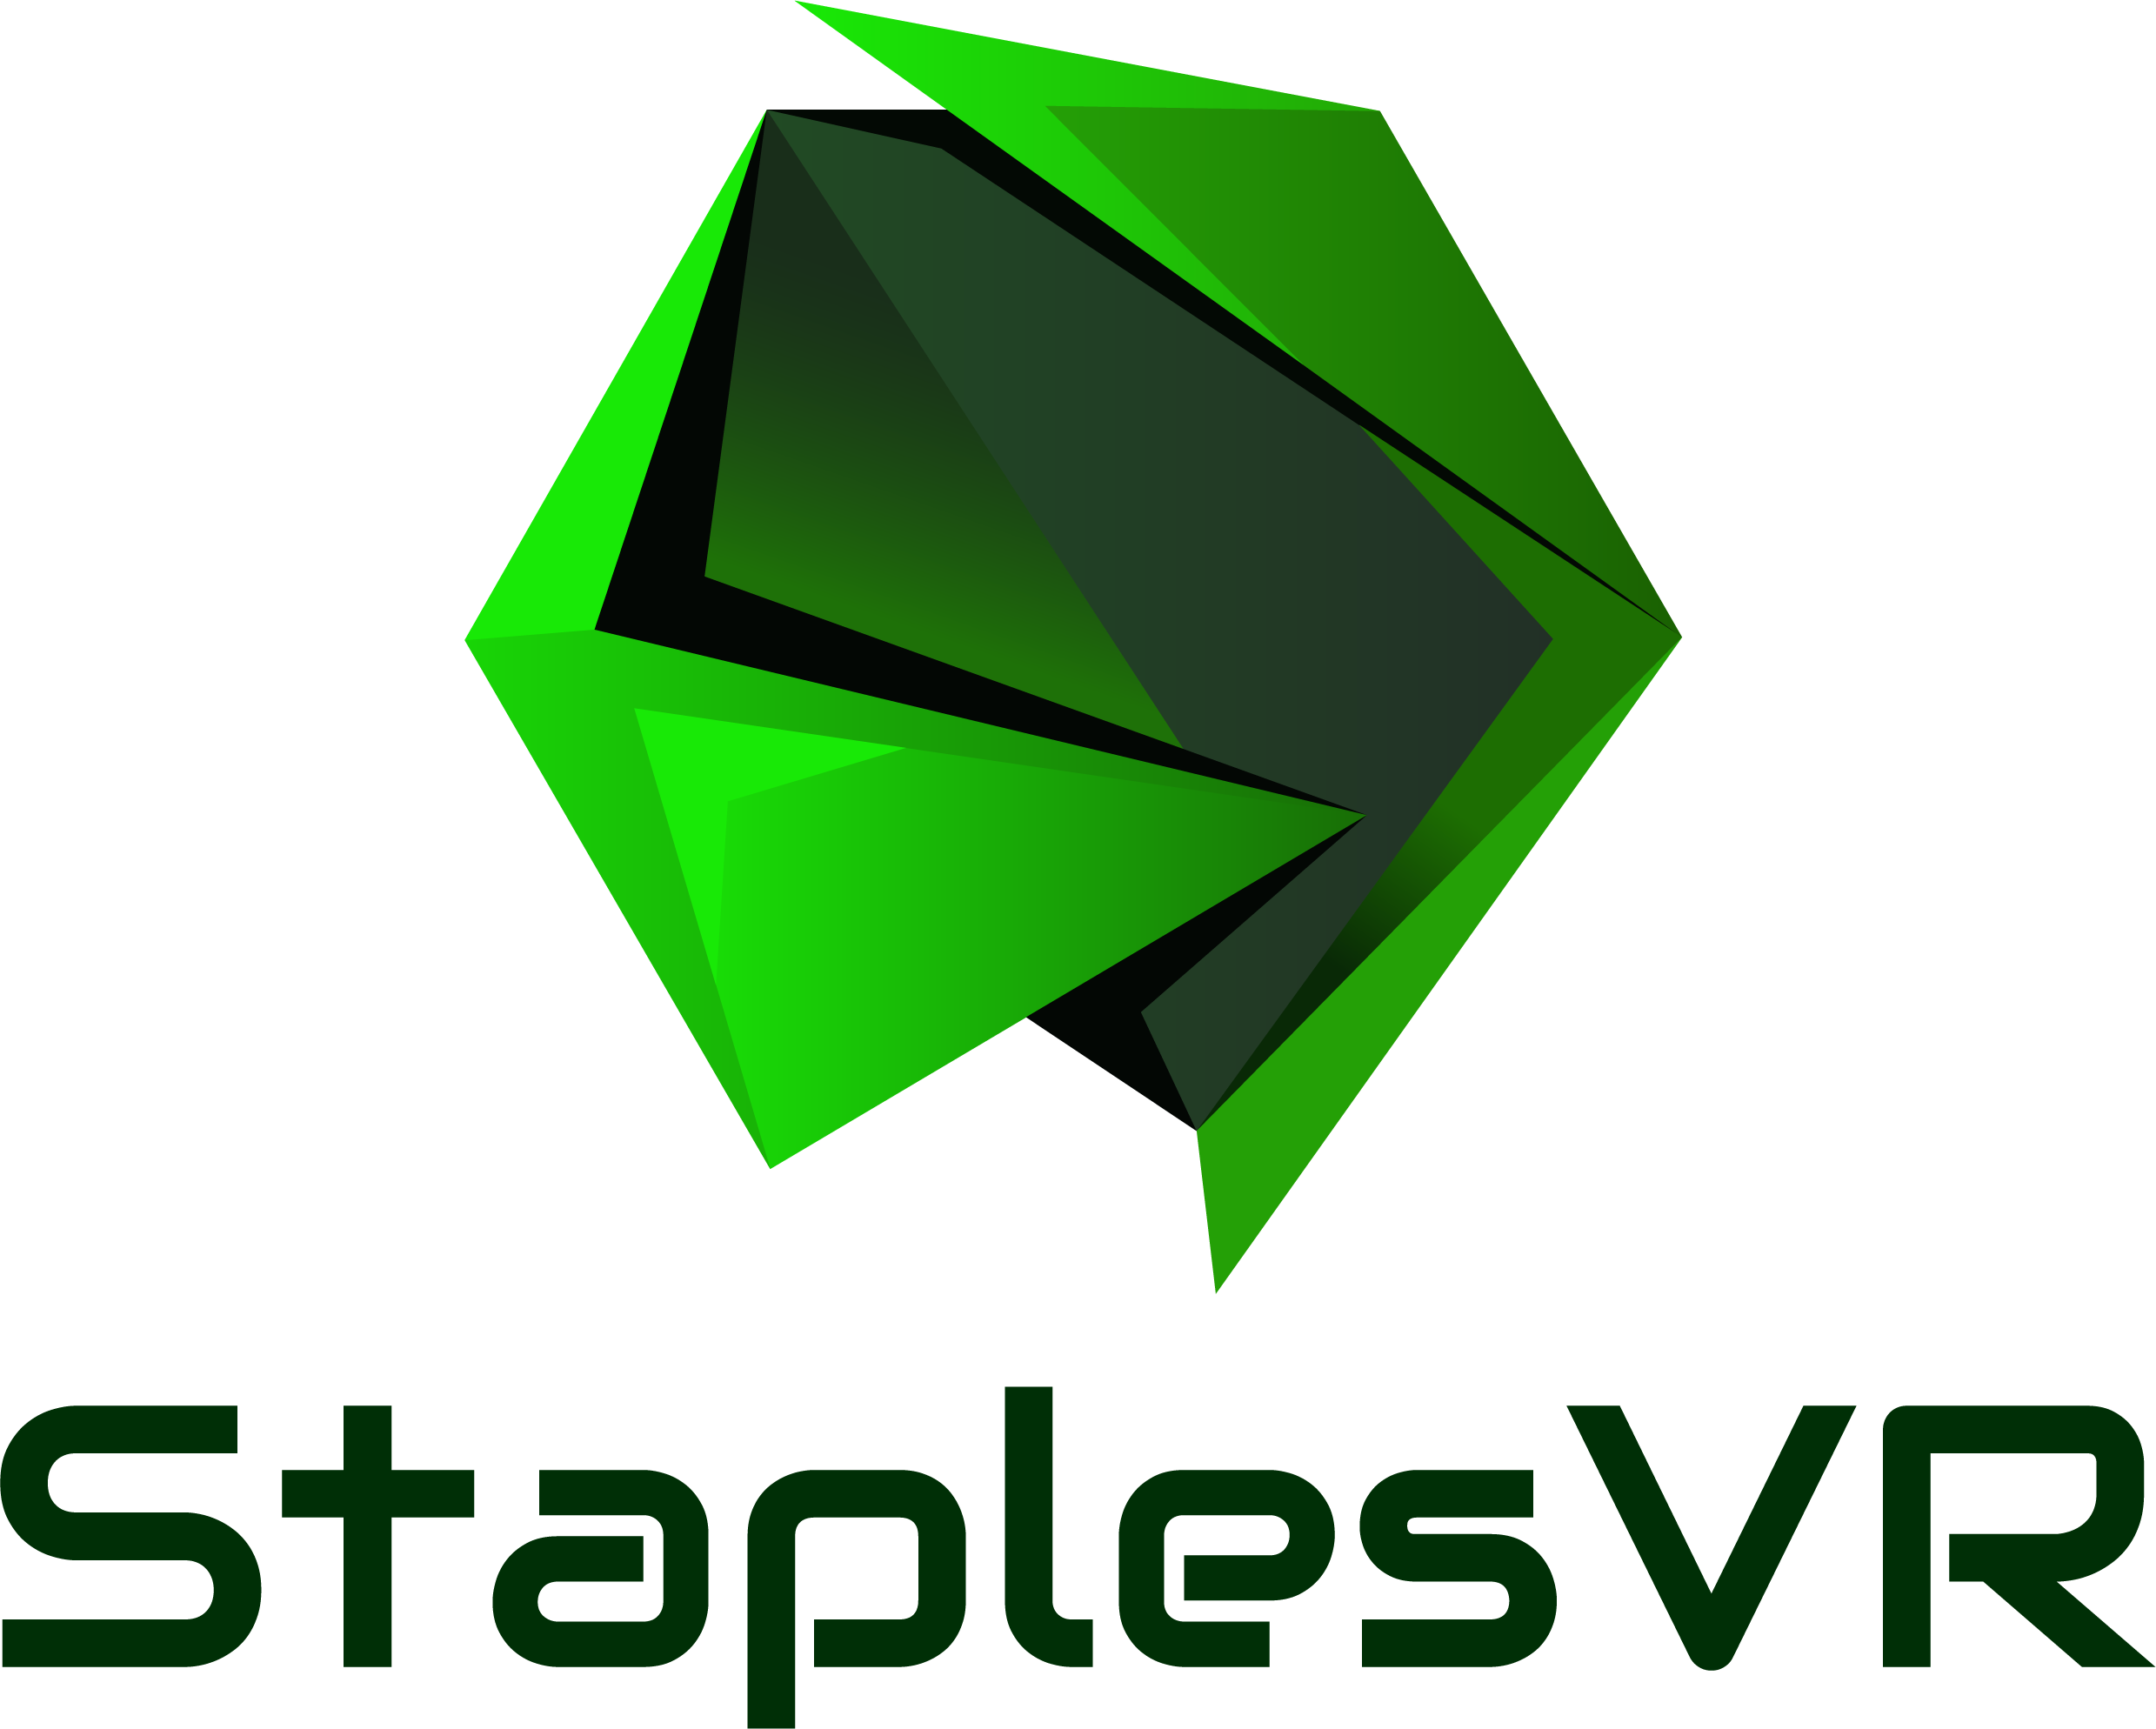 StaplesVR Logo (1).png